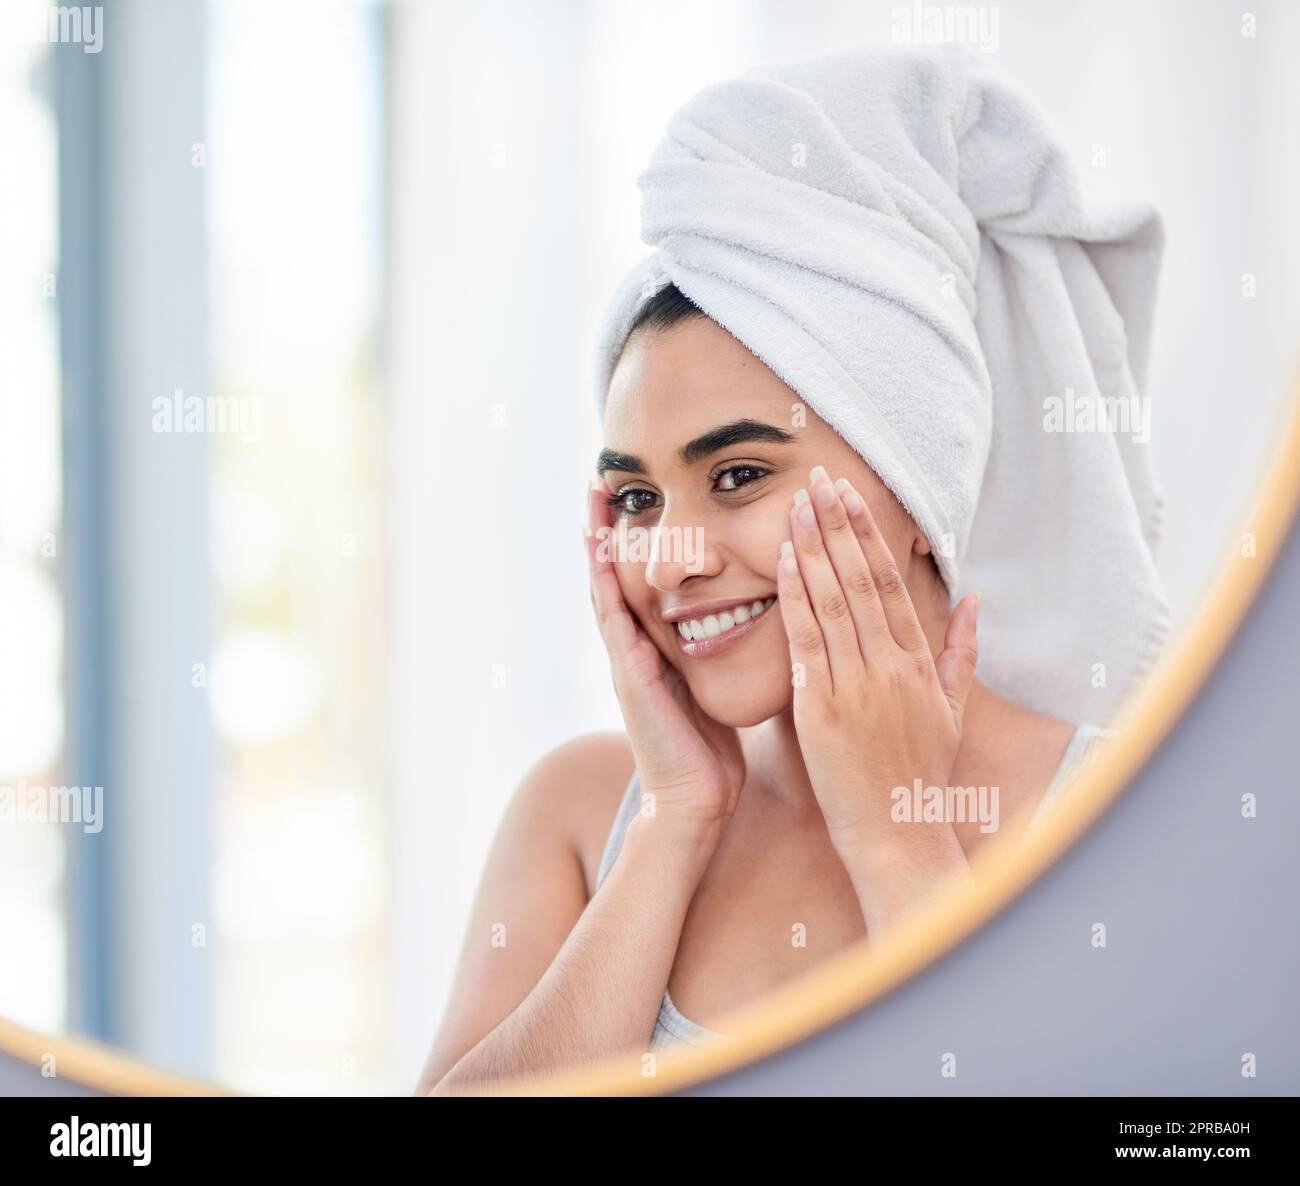 Meine Dermatologin wird so zufrieden sein mit meinem Fortschritt. Junge Frau bewundert sich in ihrem Badezimmerspiegel. Stockfoto